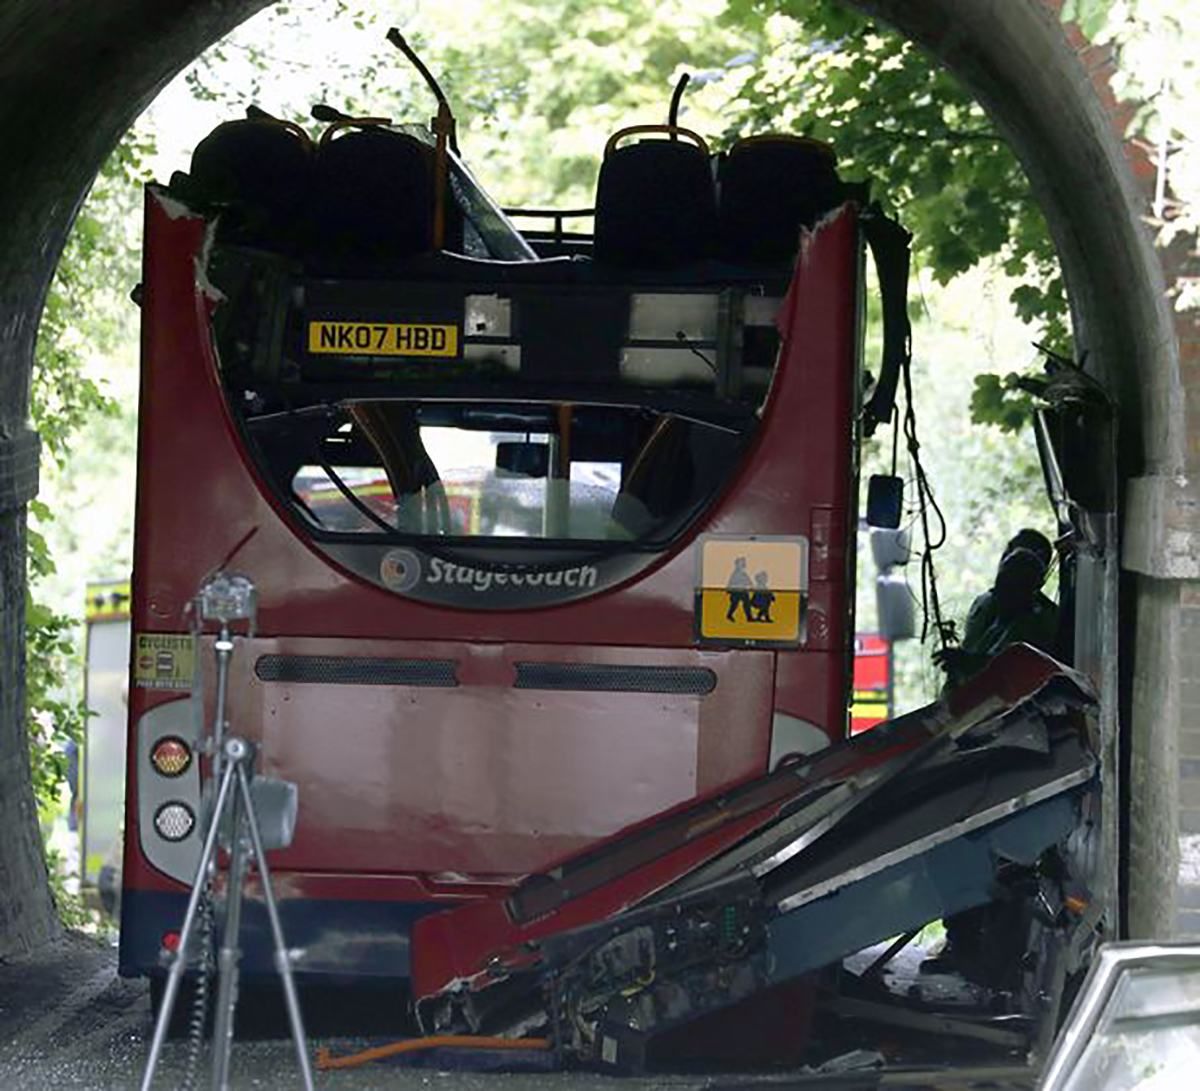 15 дітей постраждали у ДТП зі шкільним автобусом у Великій Британії